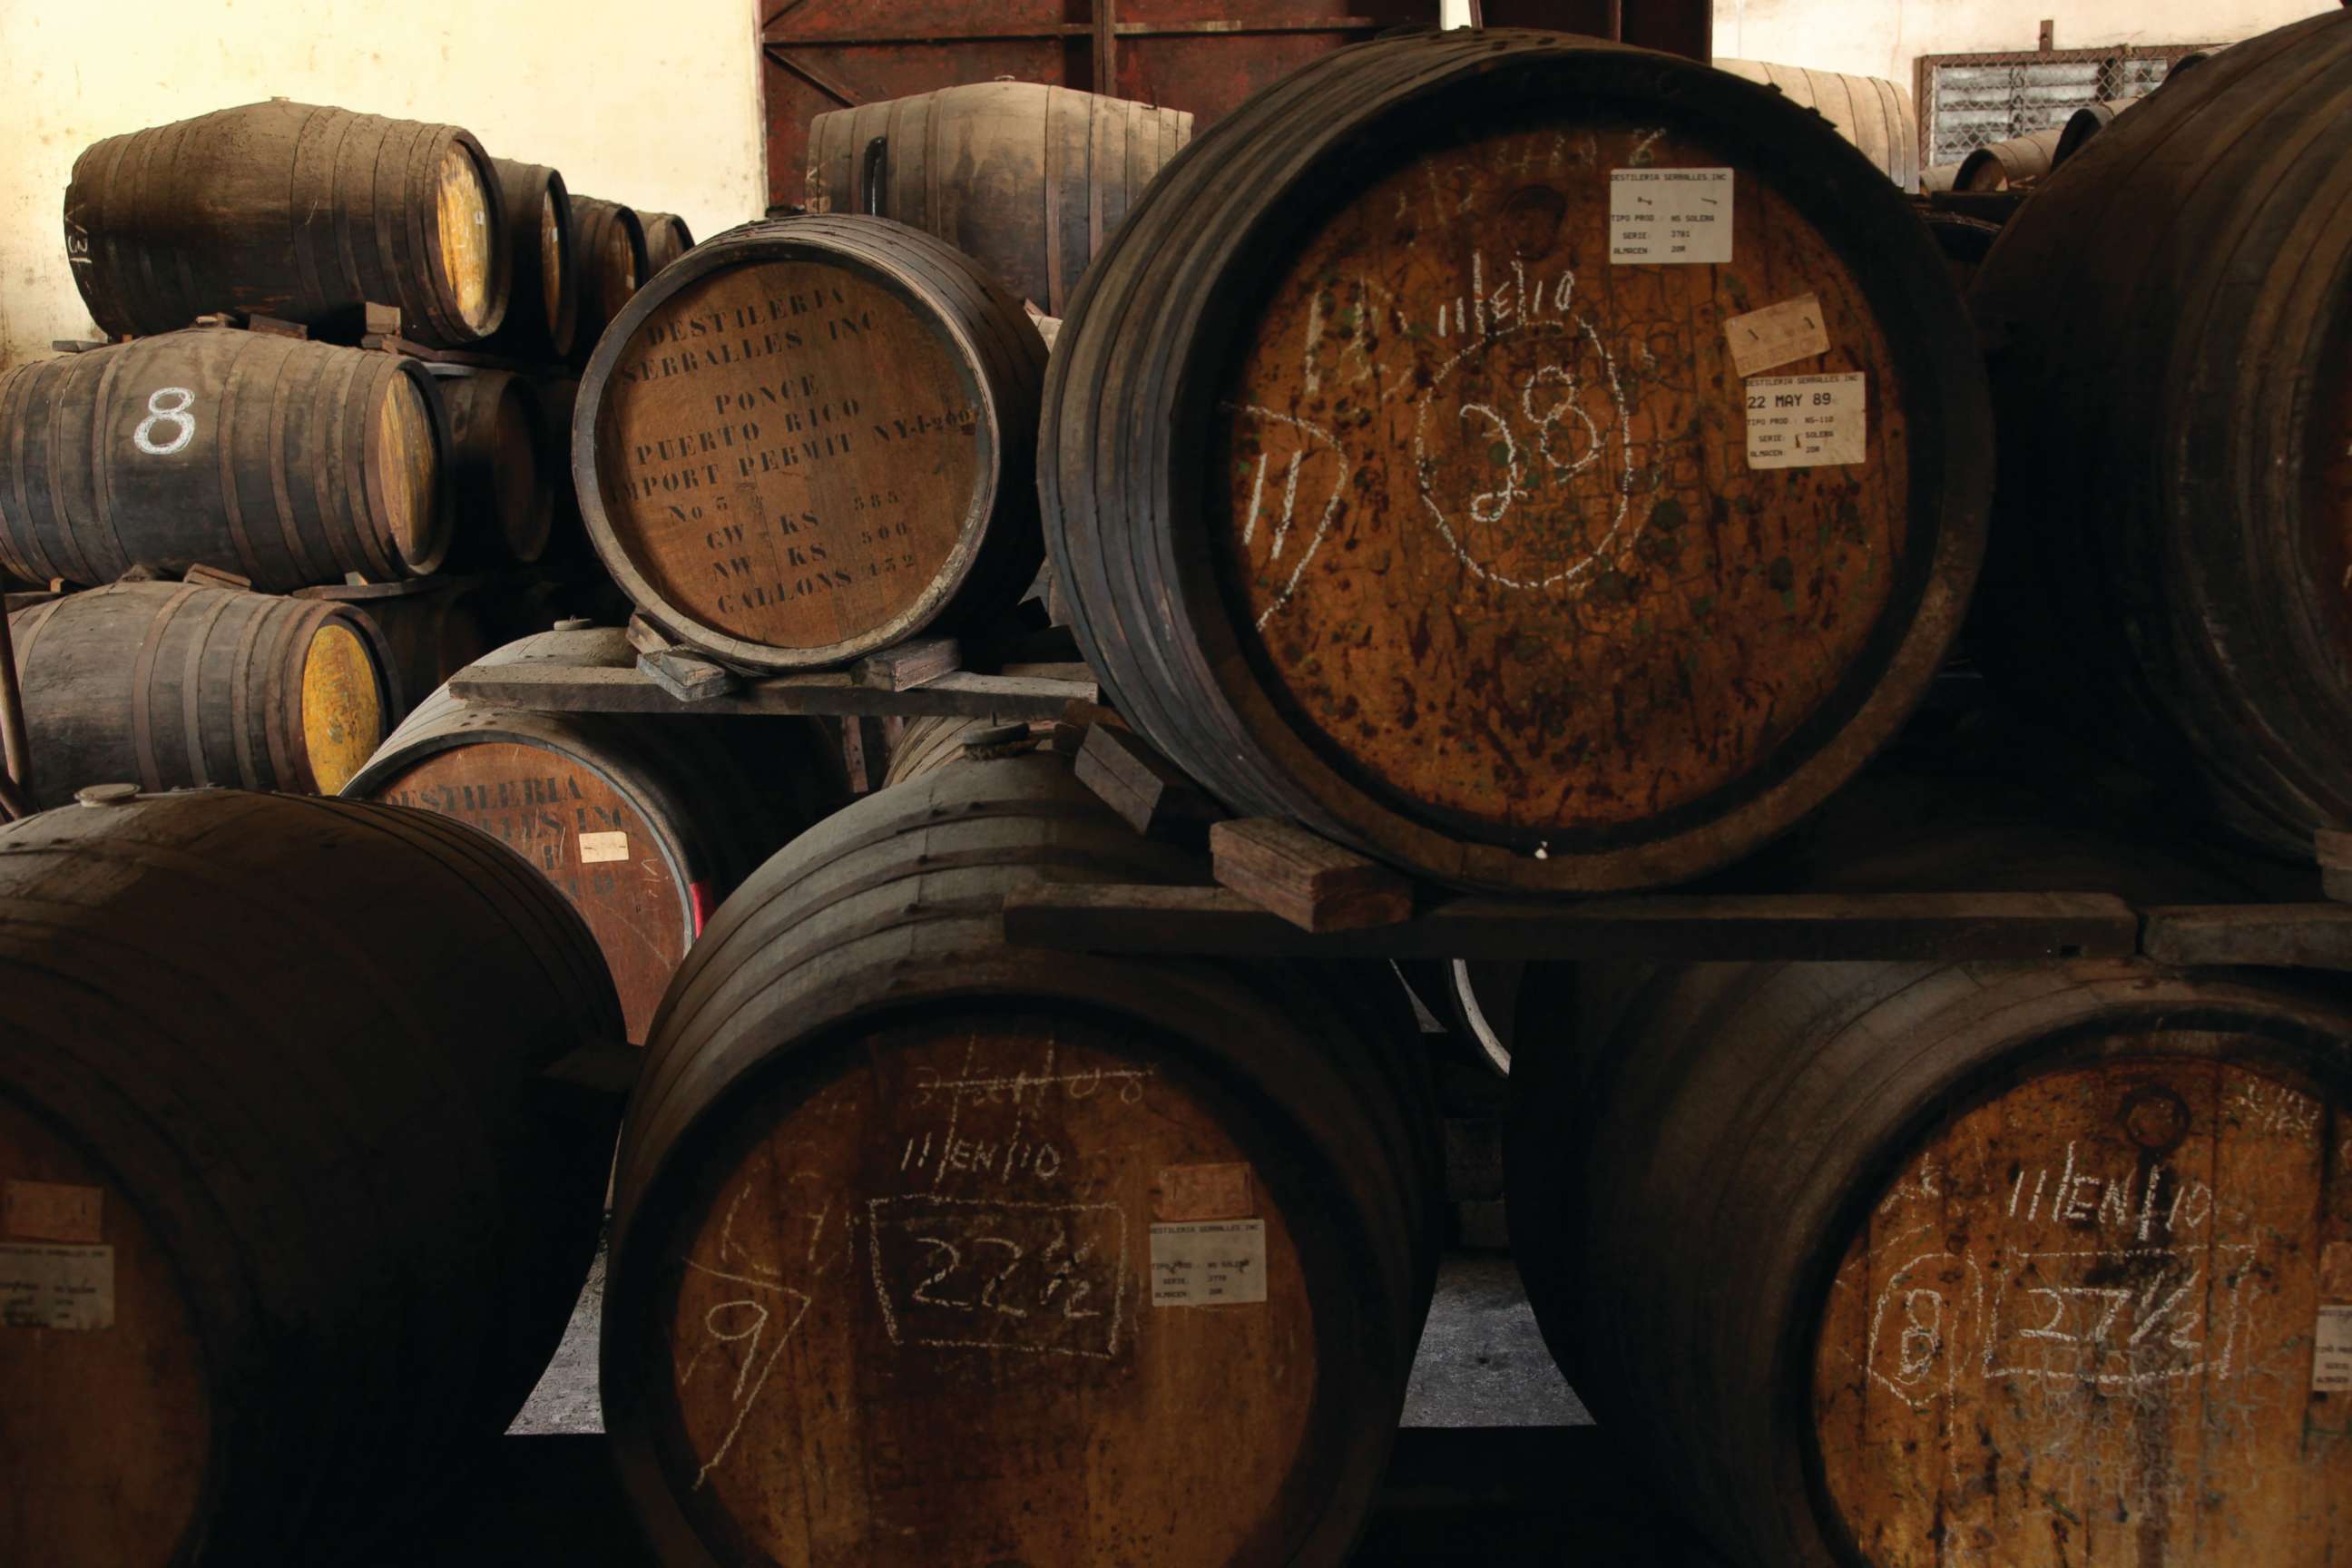 PHOTO: Rum barrels from Destilería Serrallés, Inc. at the distillery in Puerto Rico.